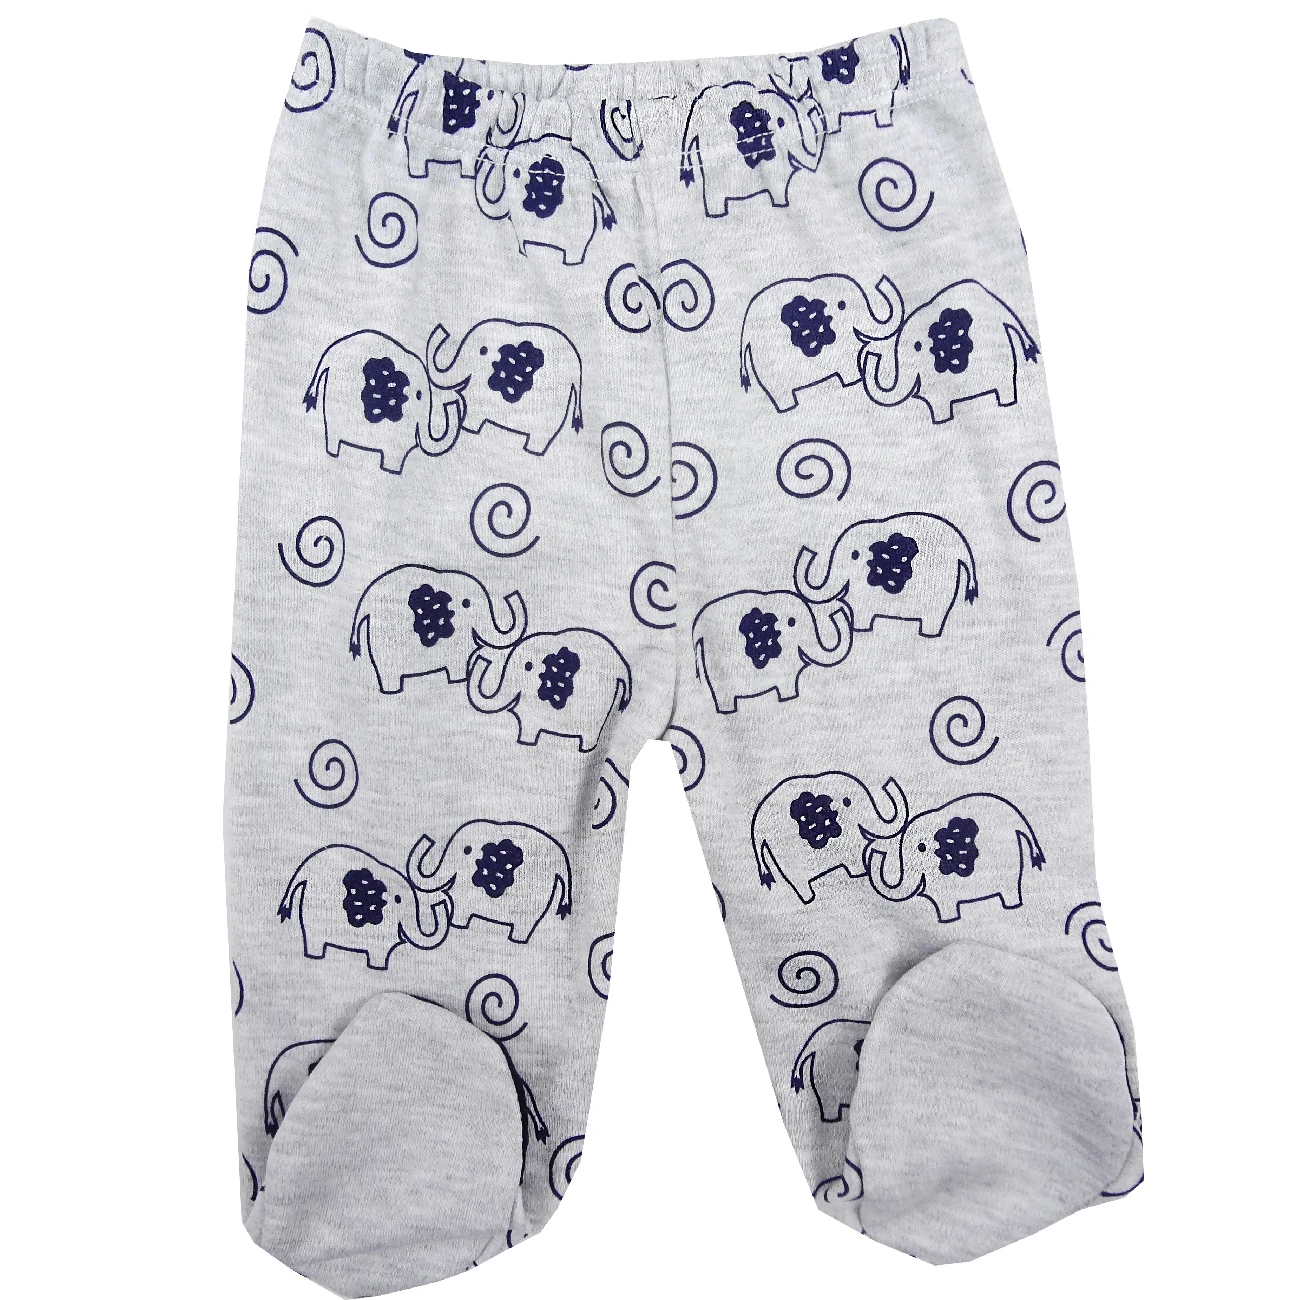 Одежда для новорожденных мальчиков комплект из 3 предметов для детей от 0 до 3 лет, футболка штаны и шапочка, 100 хлопок, мягкий и теплый материал